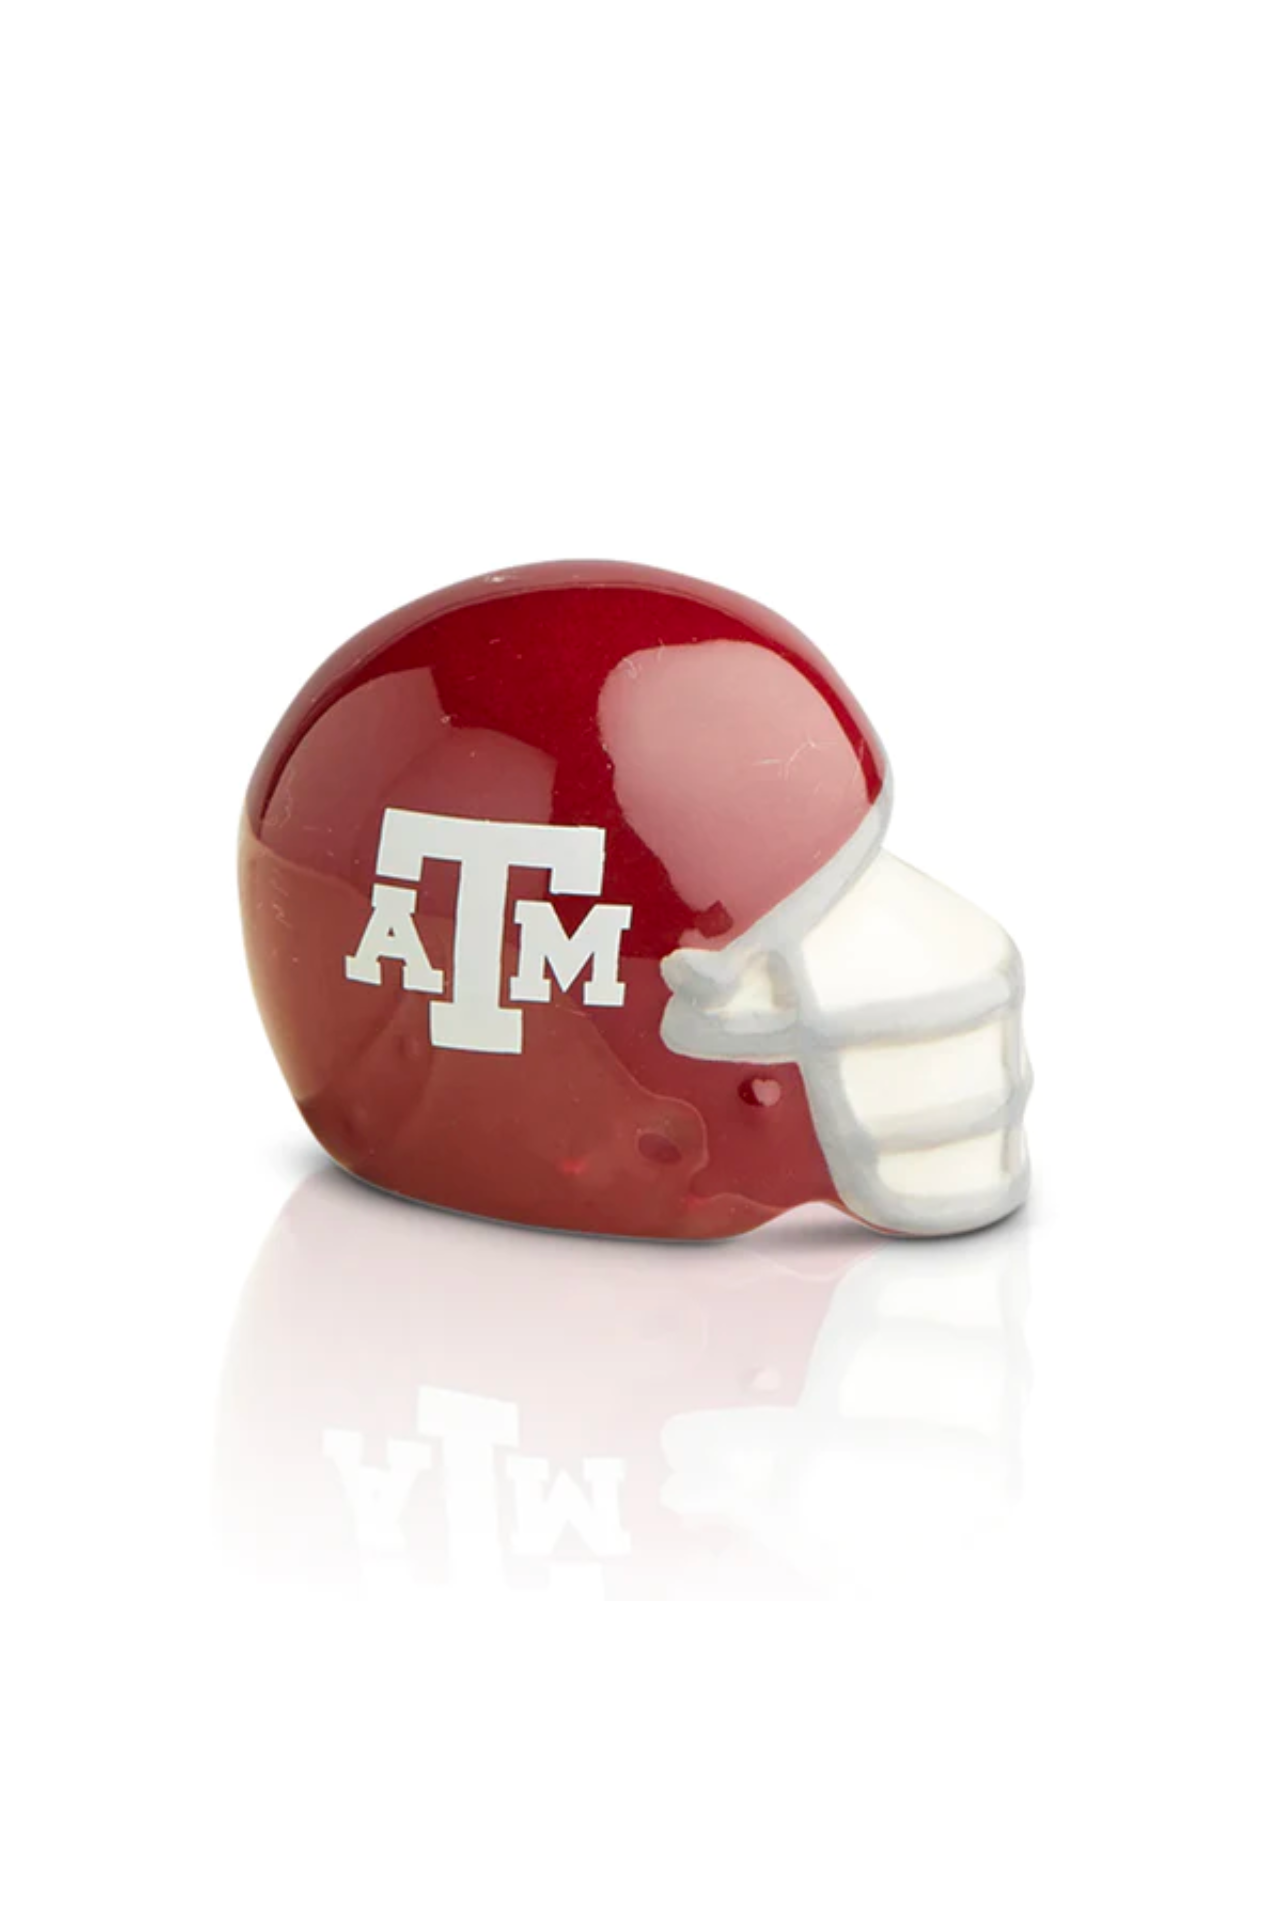 Texas A&M University Helmet